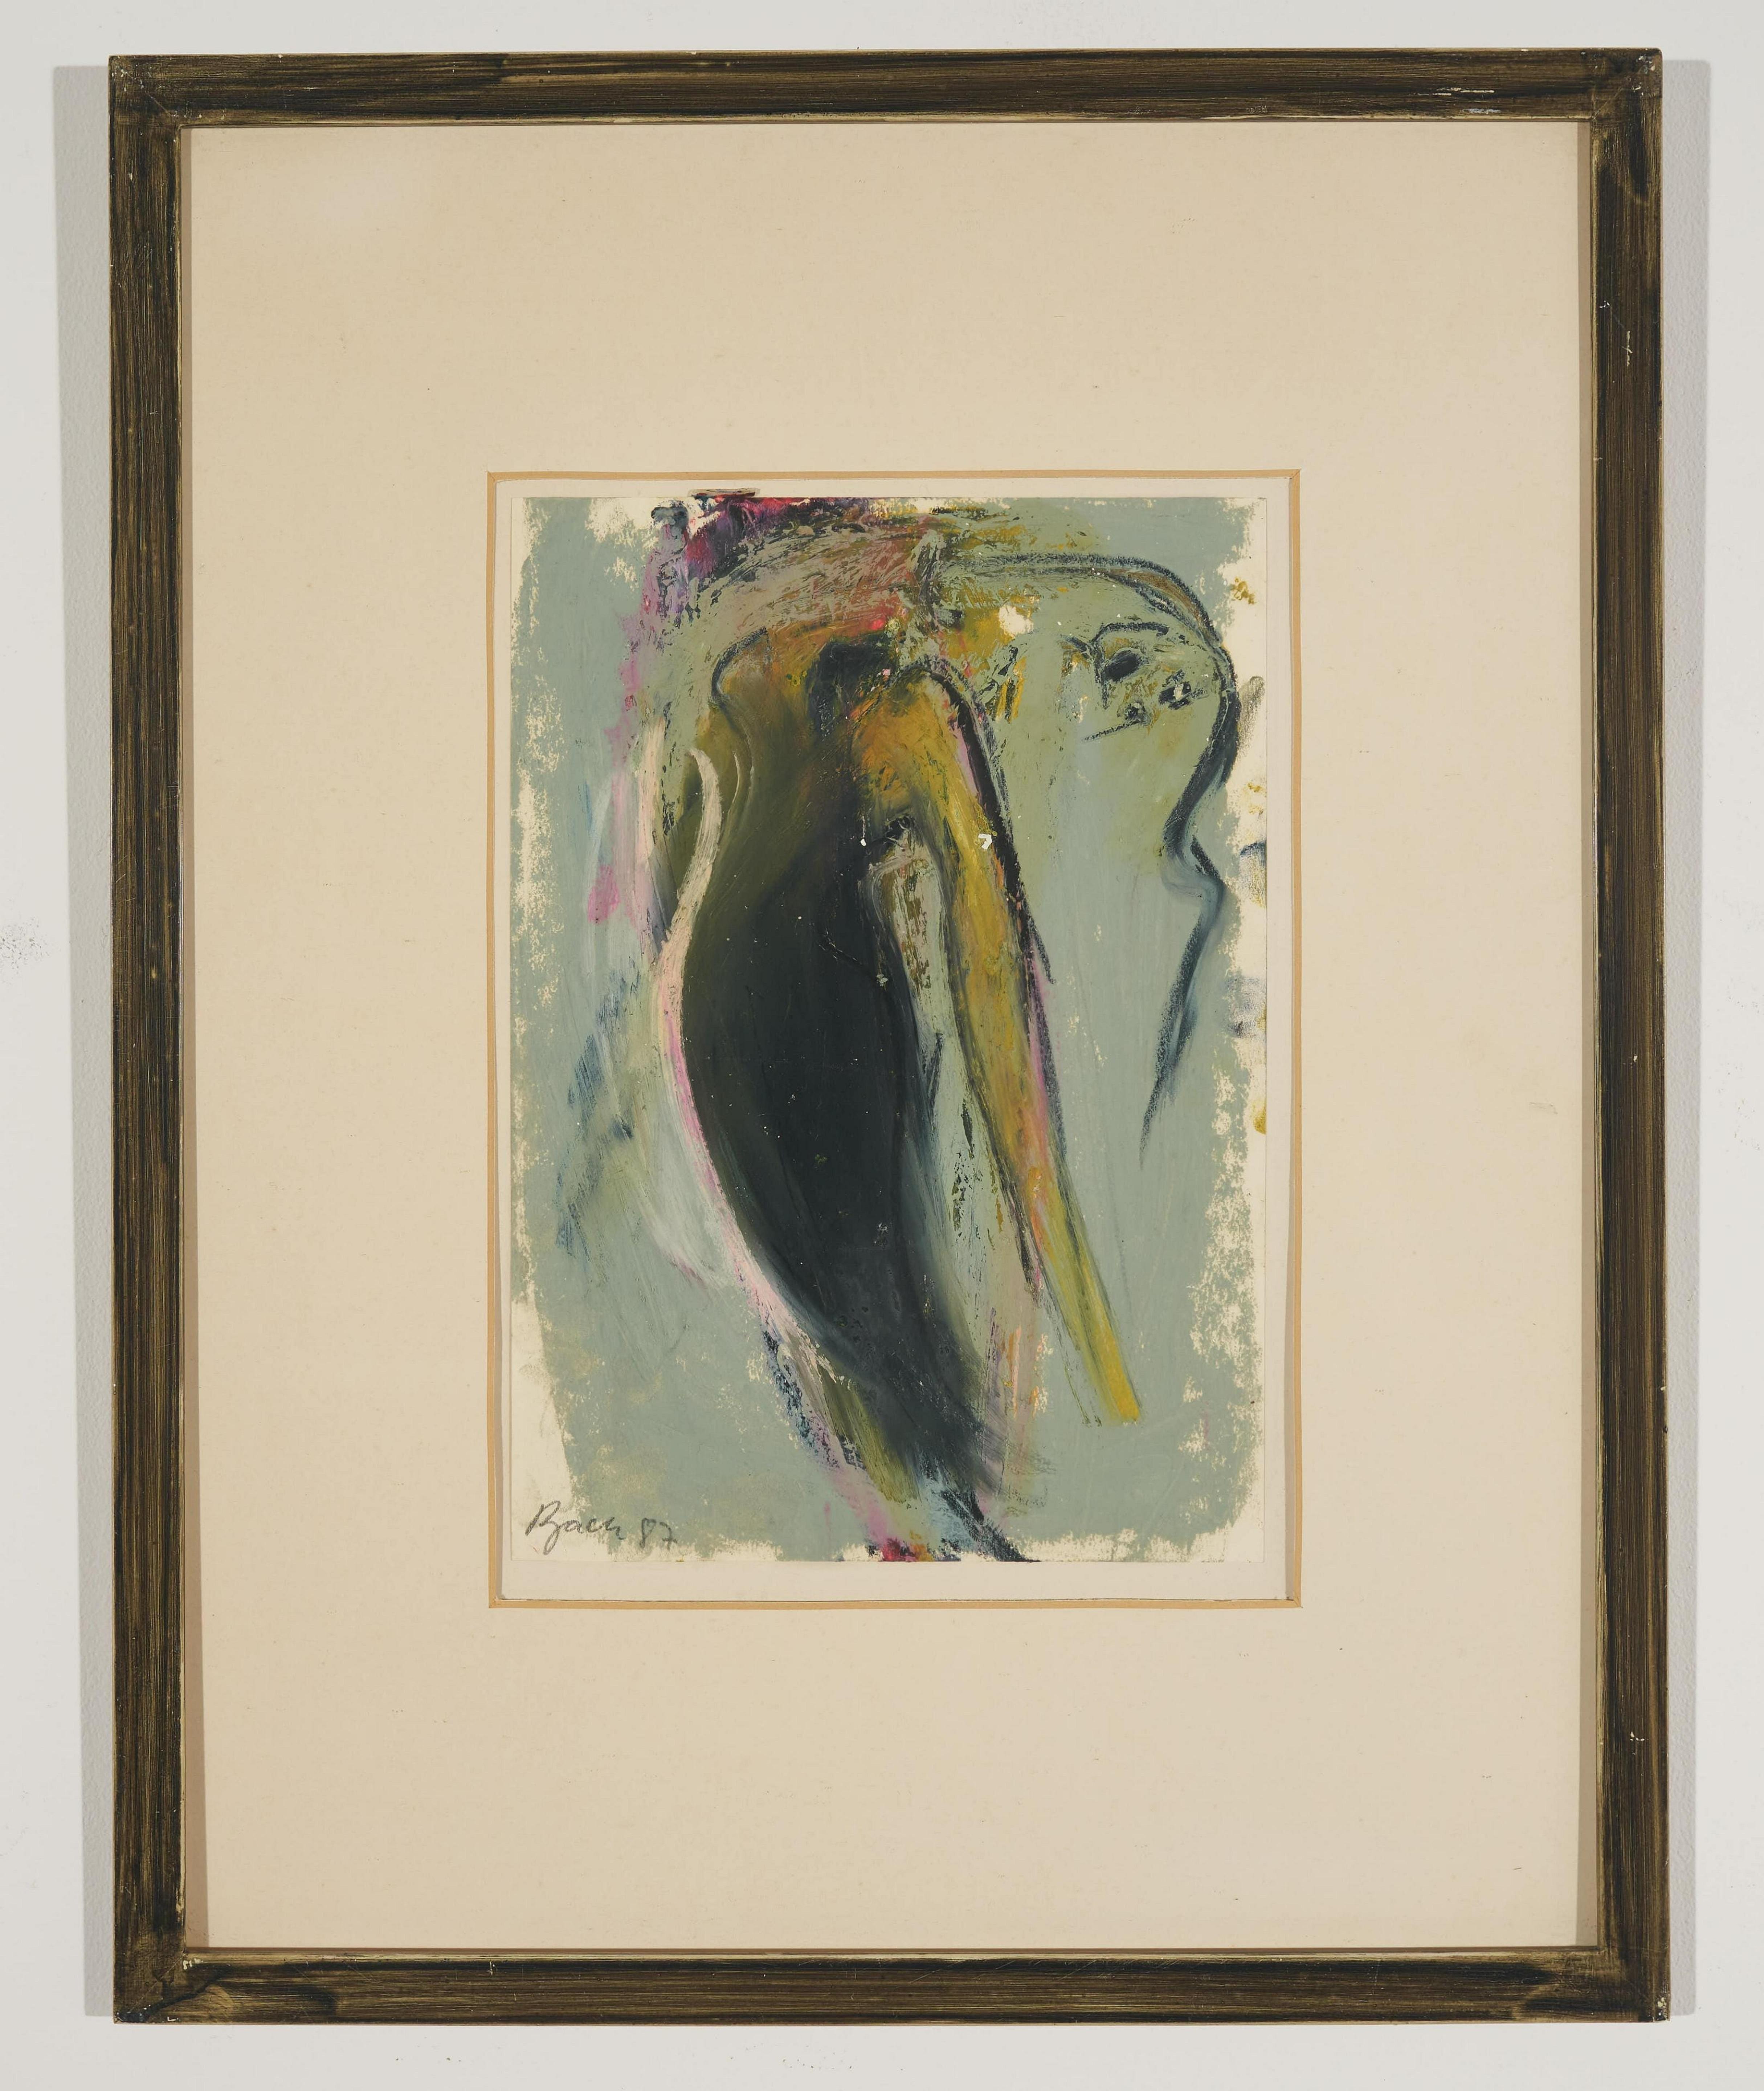 Junge Wilde, néo-expressionniste allemand, peinture abstraite à la gouache signée à la main - Painting de Elvira Bach